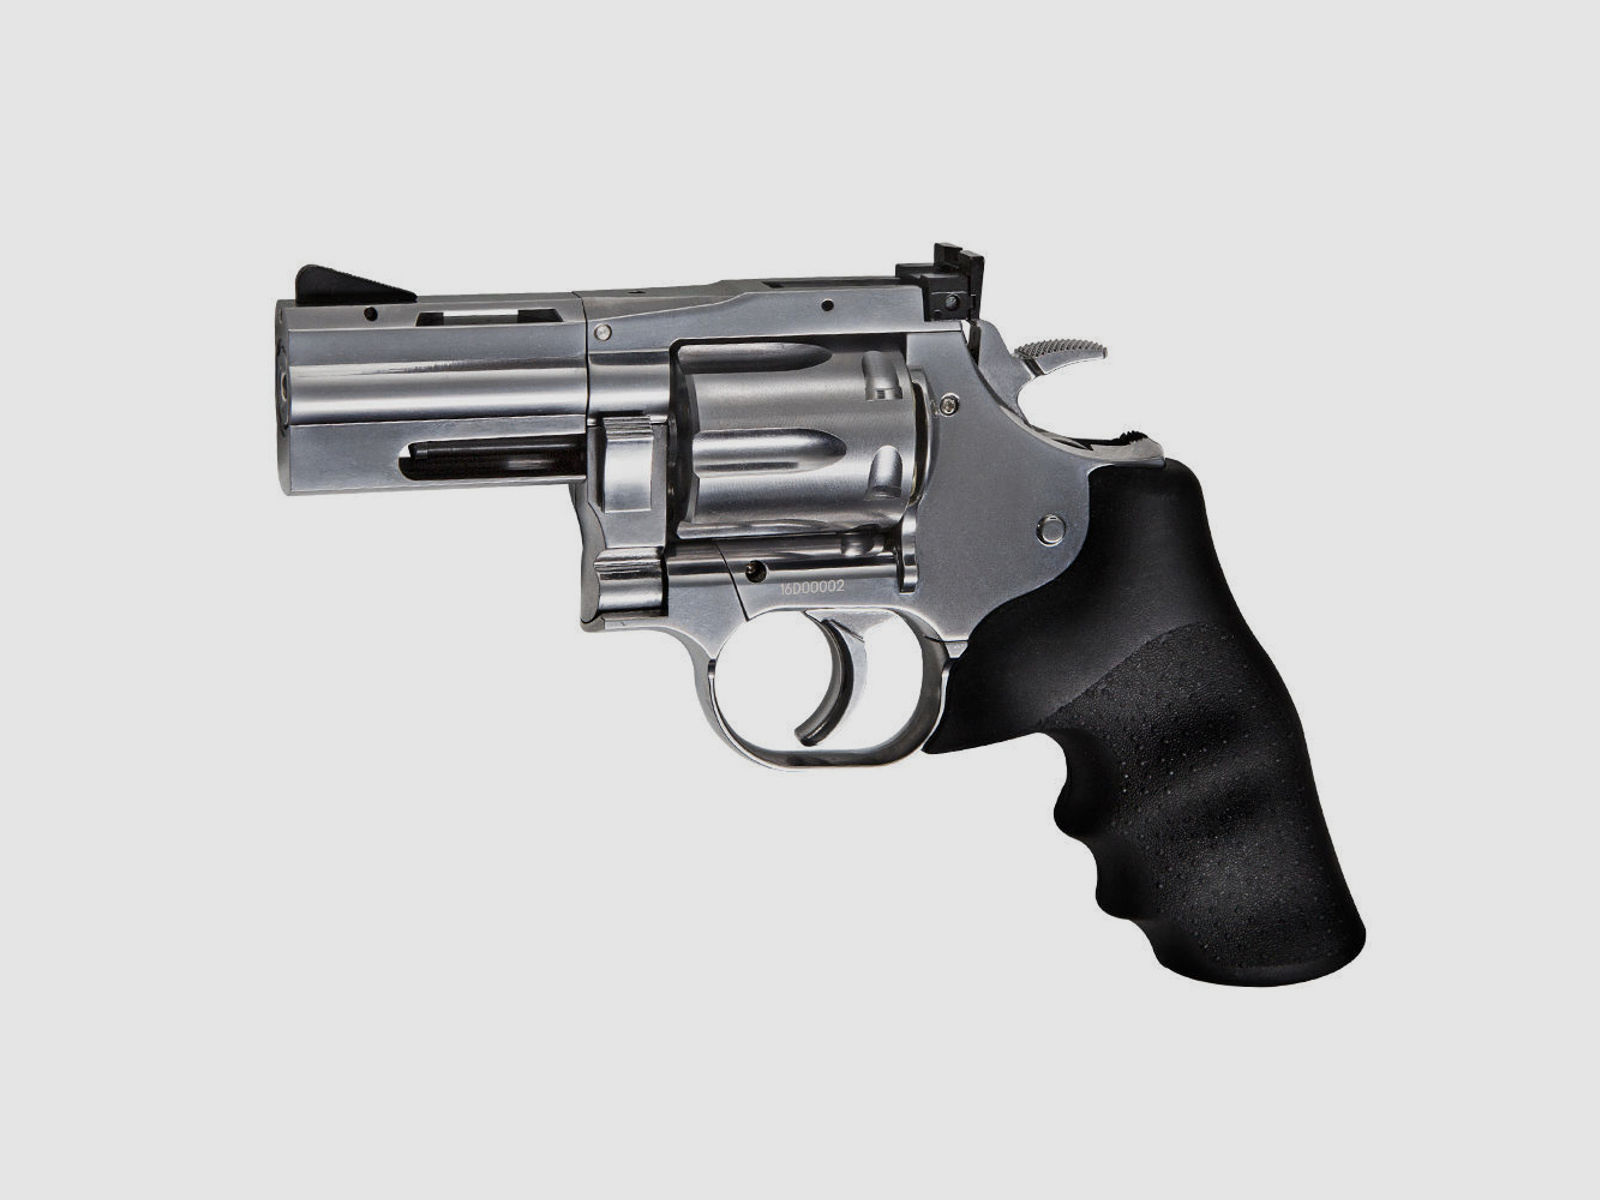 ASG CO2 Revolver Dan Wesson 715 2,5 Zoll Kal. 4,5mm Diabolos - Silber